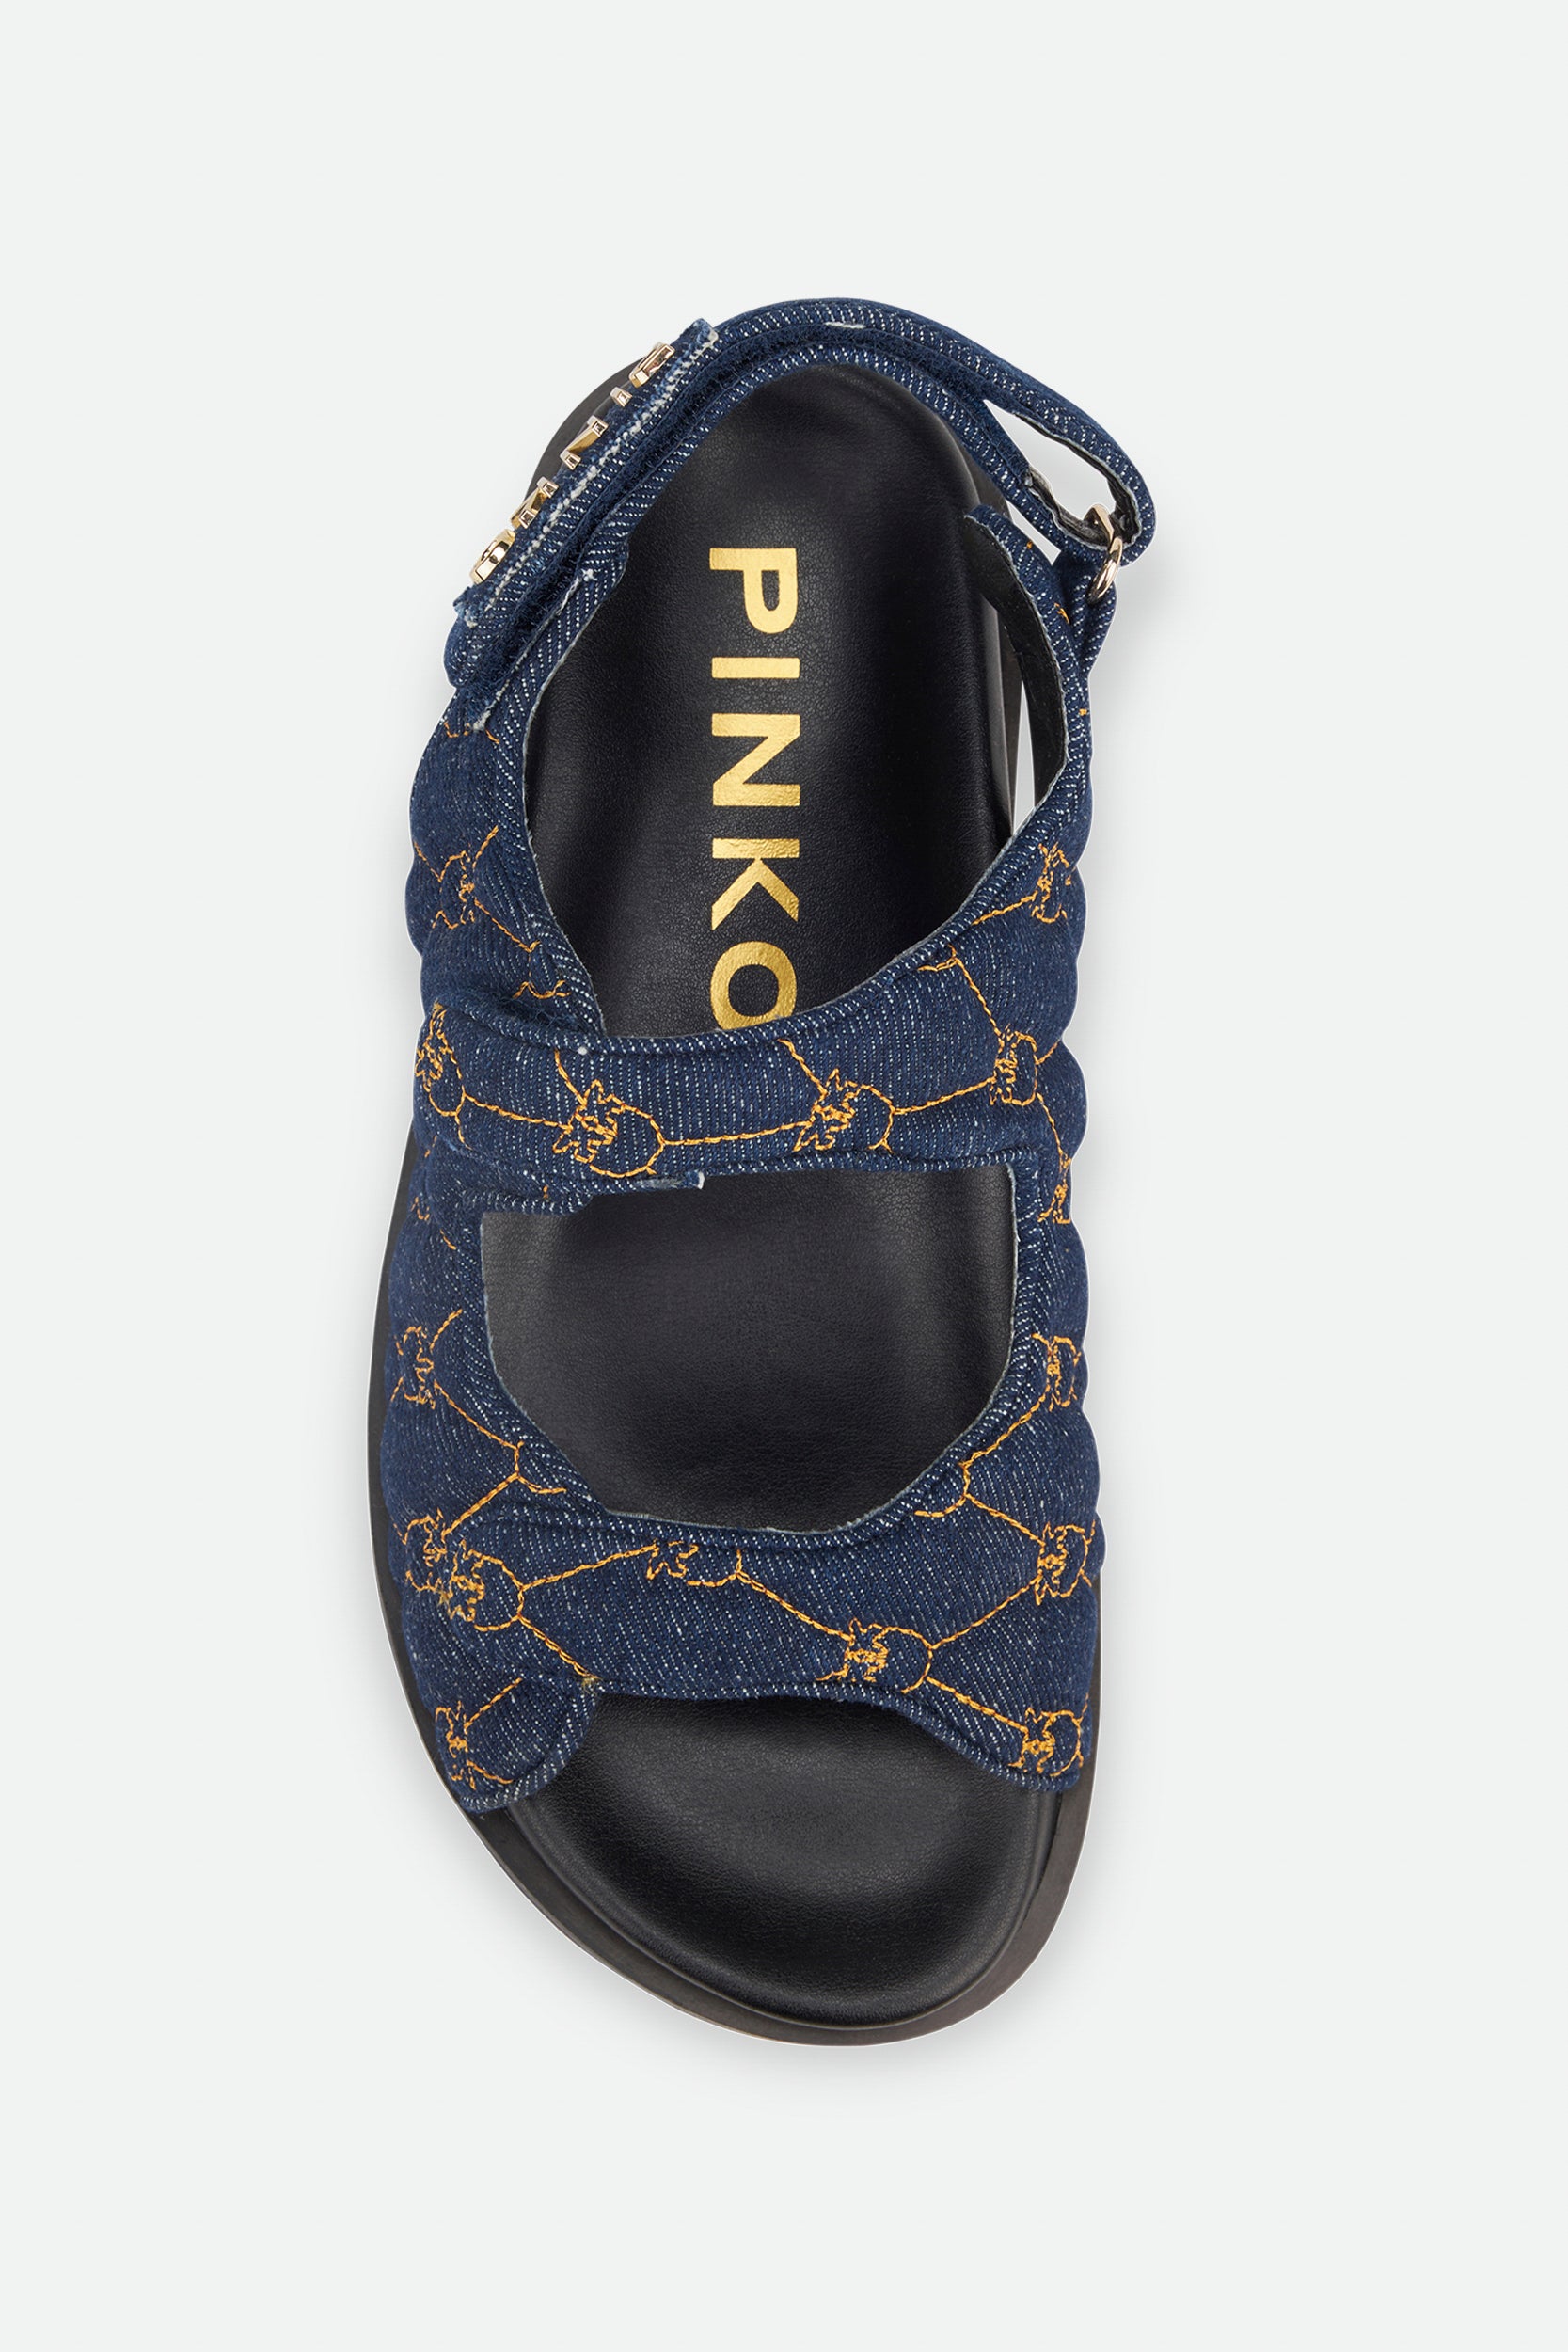 Pinko Blaue Logo-Sandale